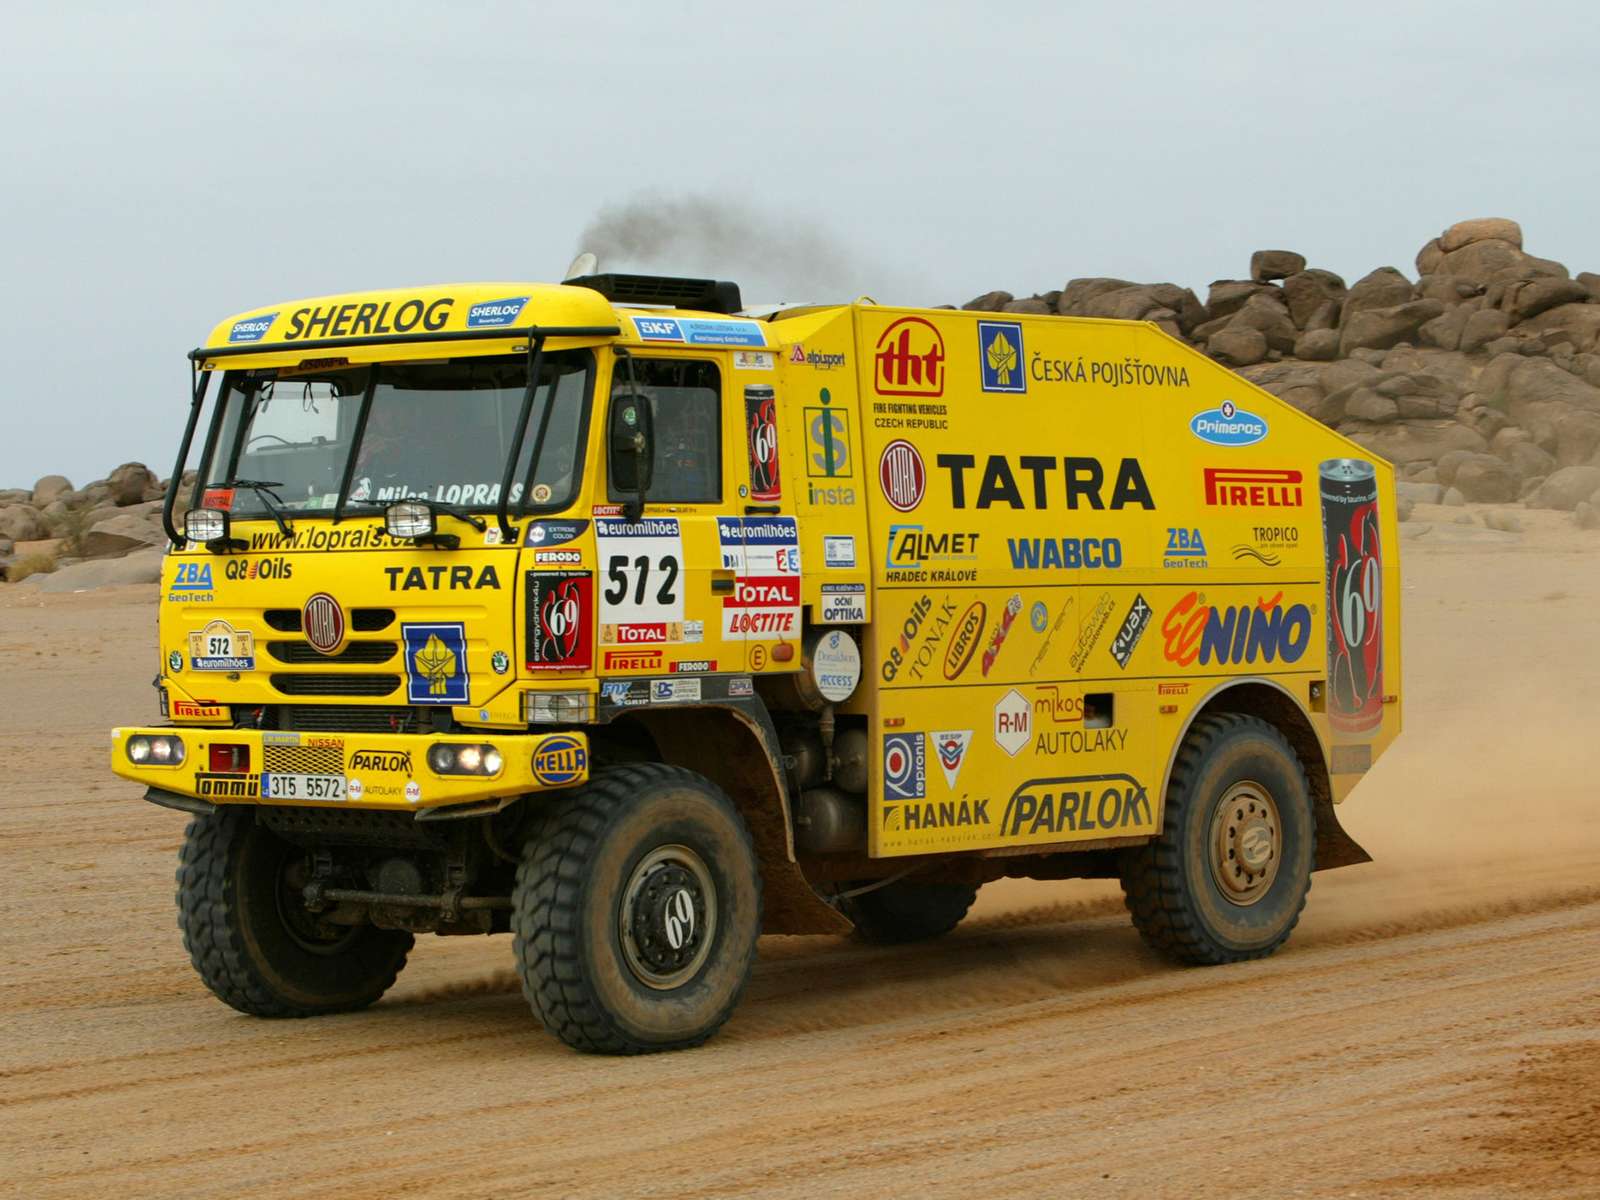 Rallye Dakar Online-Puzzle vom Foto